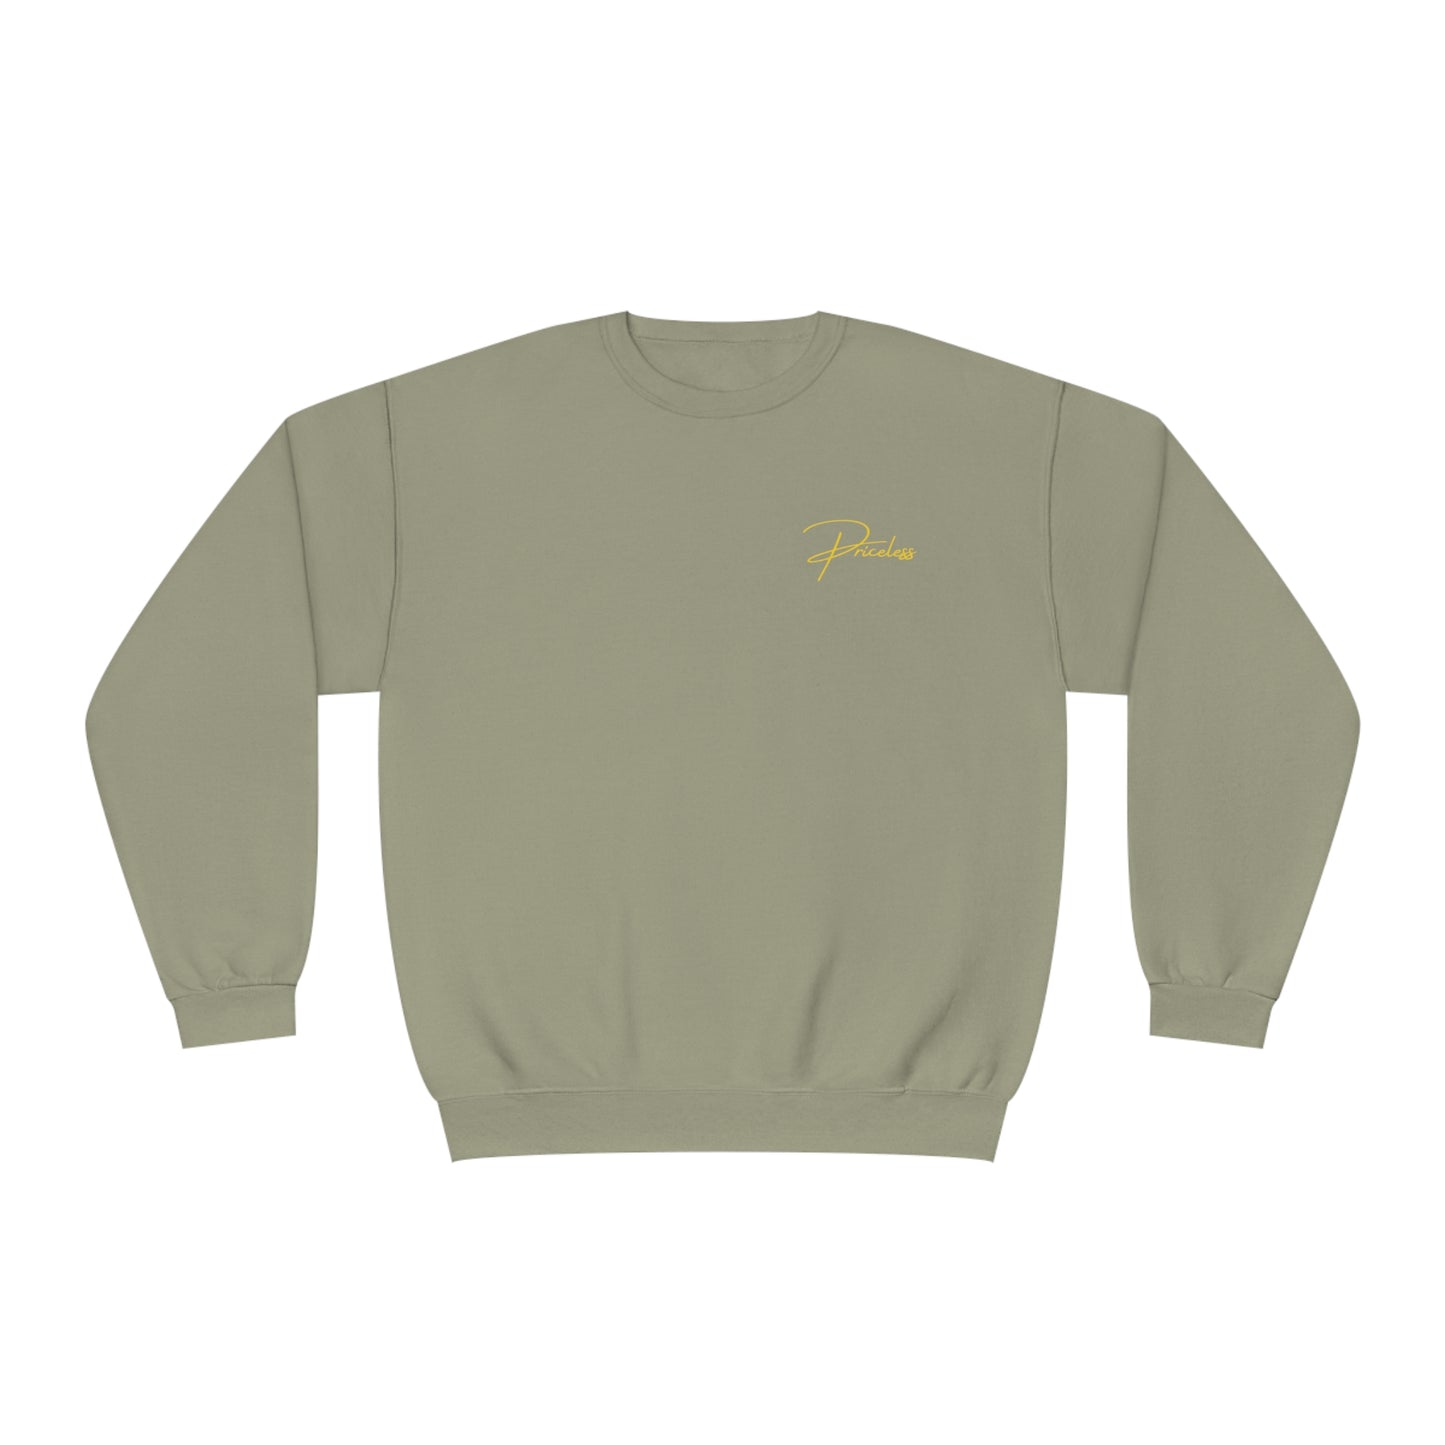 Pricele$$™ Unisex Premium Crewneck Sweatshirt